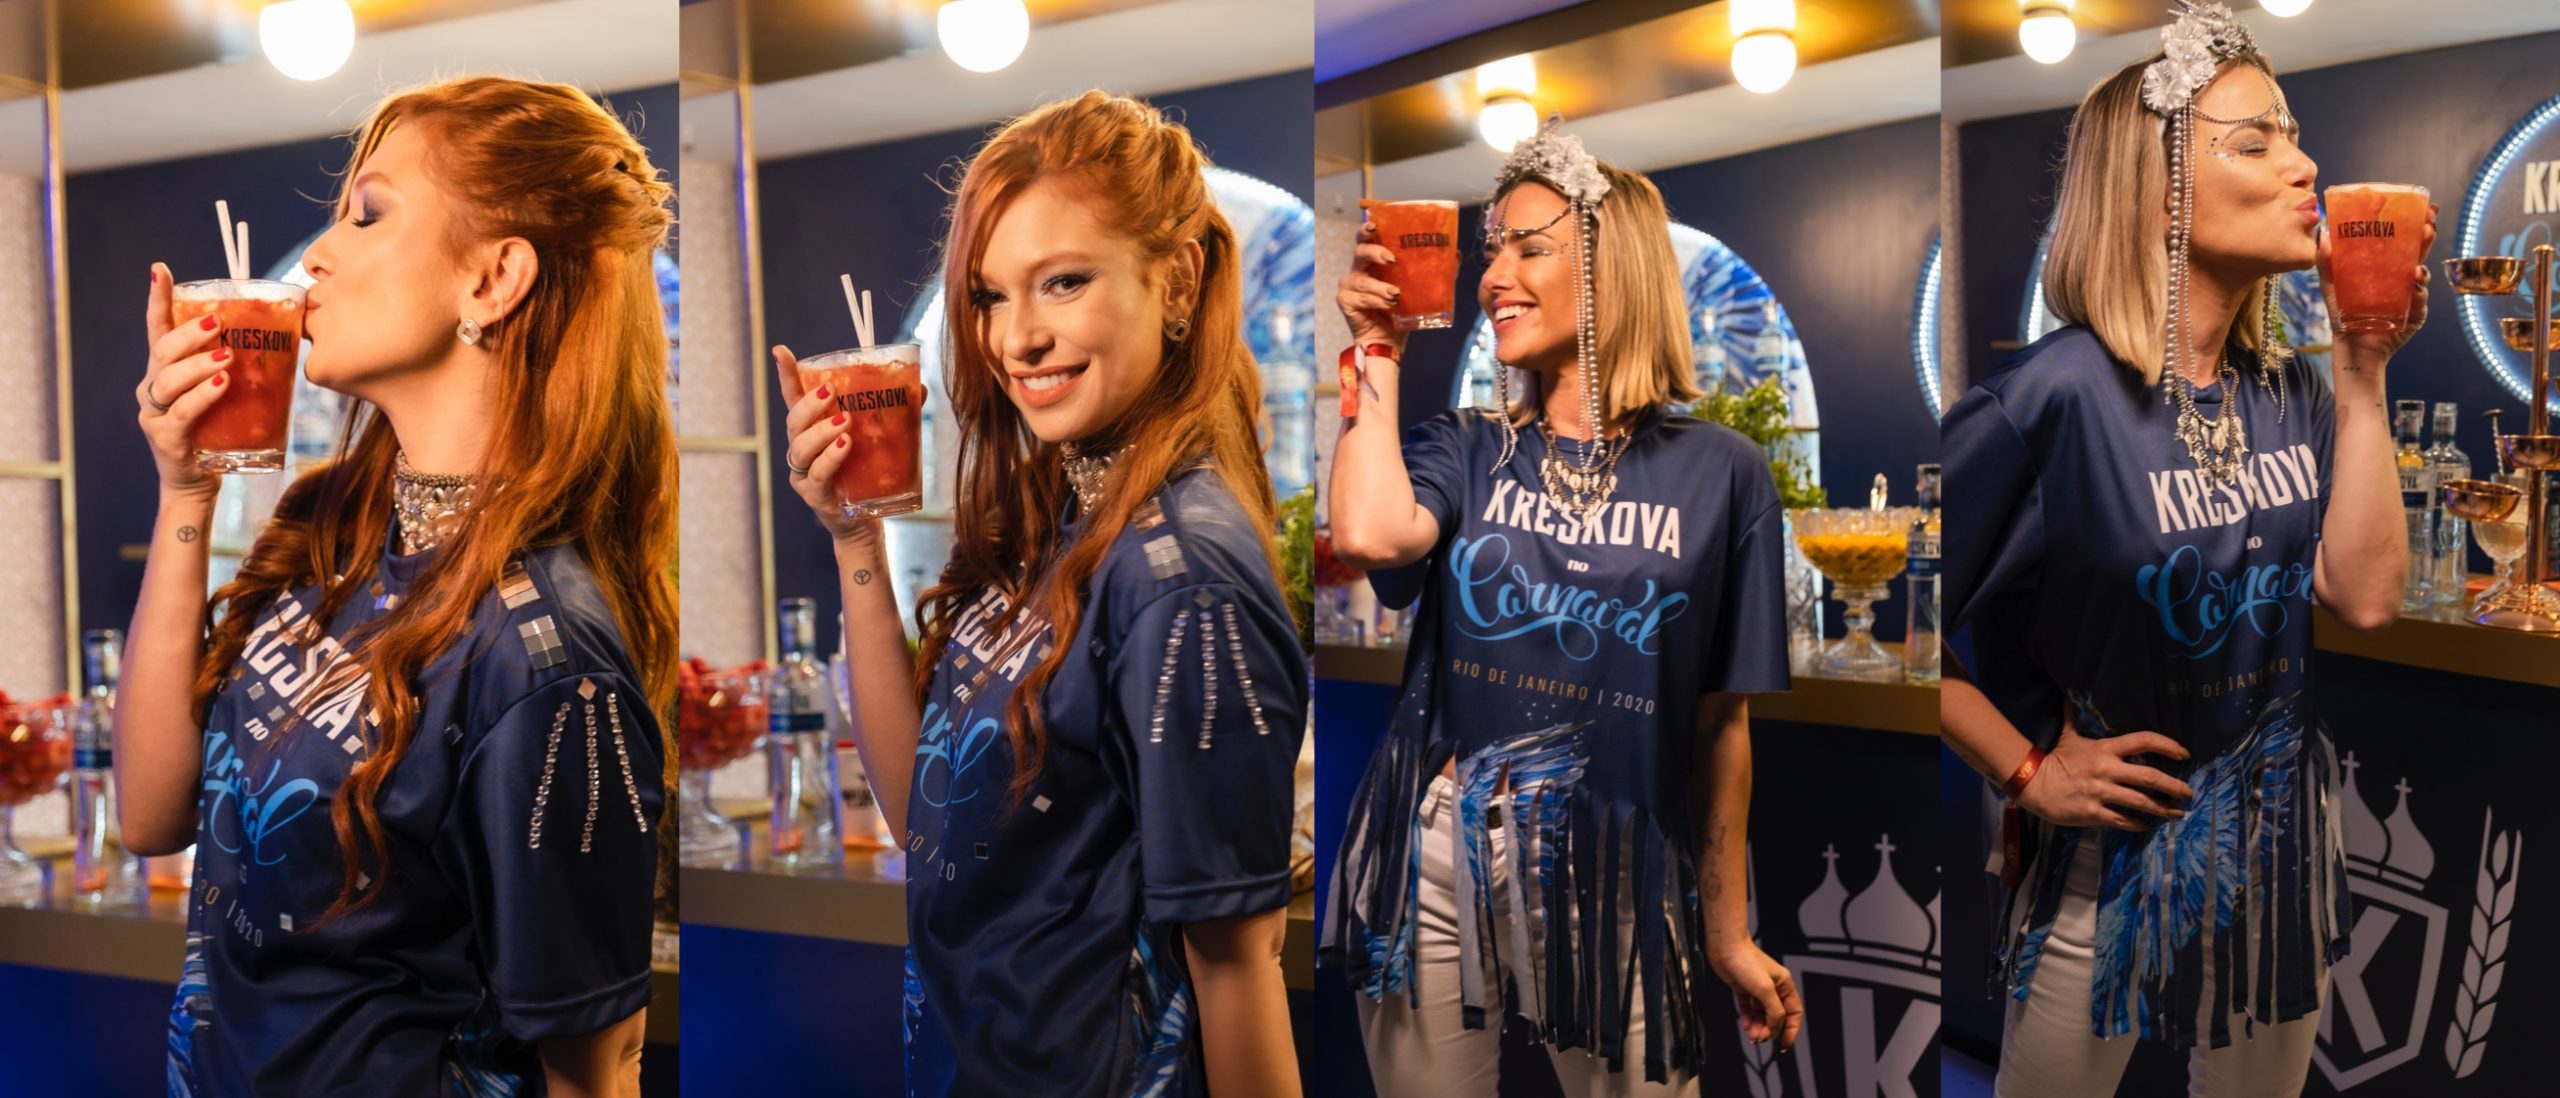 Vodka Kreskova promoveu embaixadoras no Carnaval